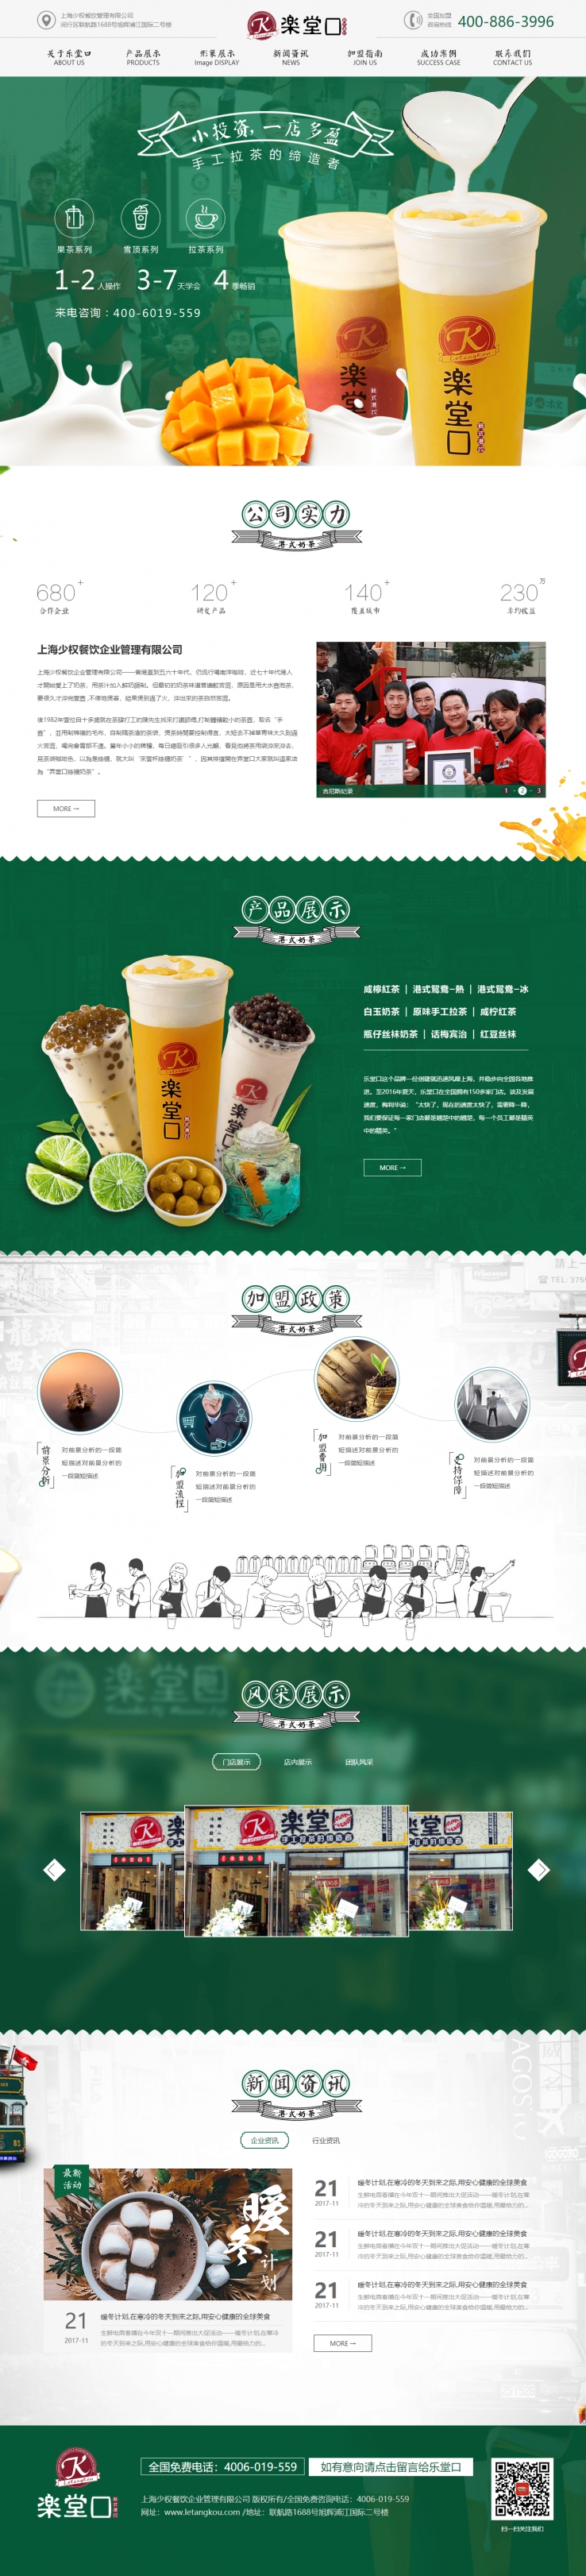 绿色精美风格的奶茶饮料餐饮企业网站源码下载